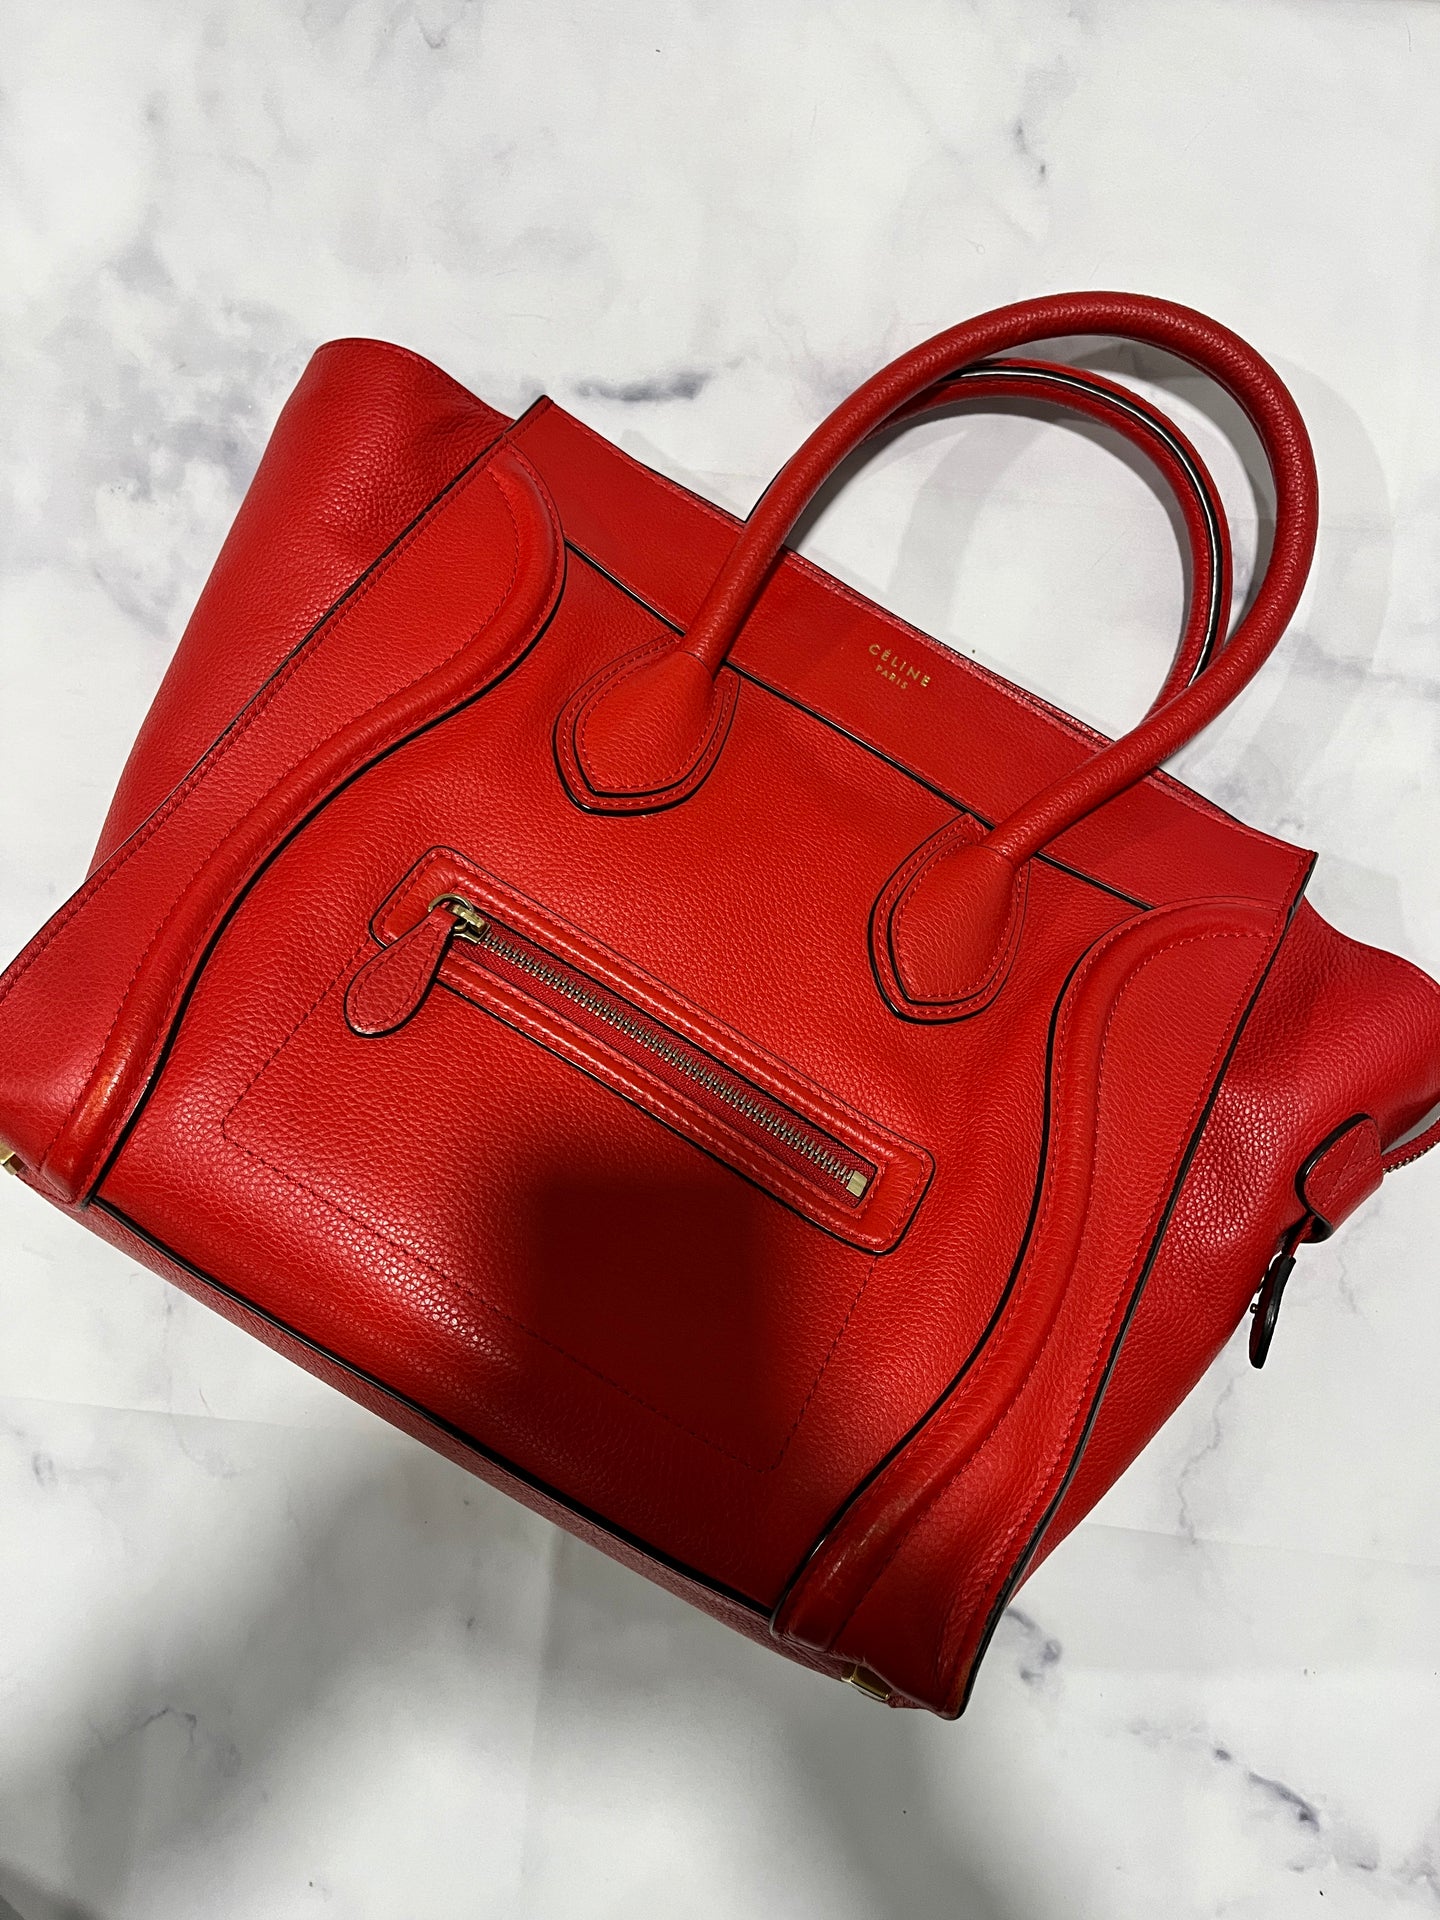 Celine Red Mini Luggage Leather Top Handle Handbag